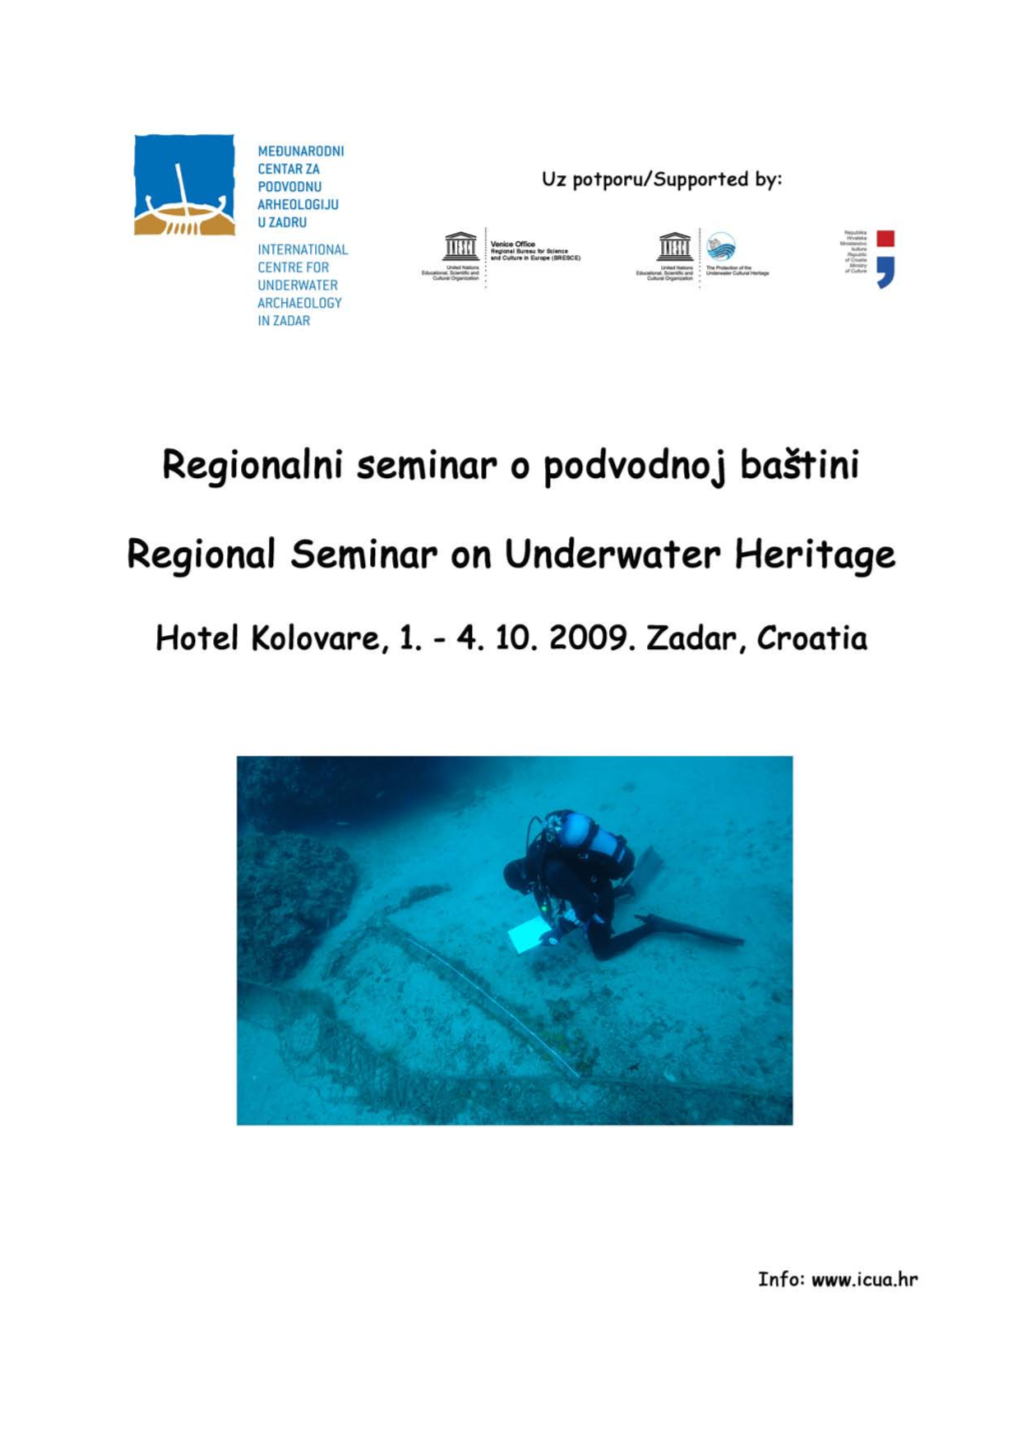 Regional Seminar on Underwater Heritage